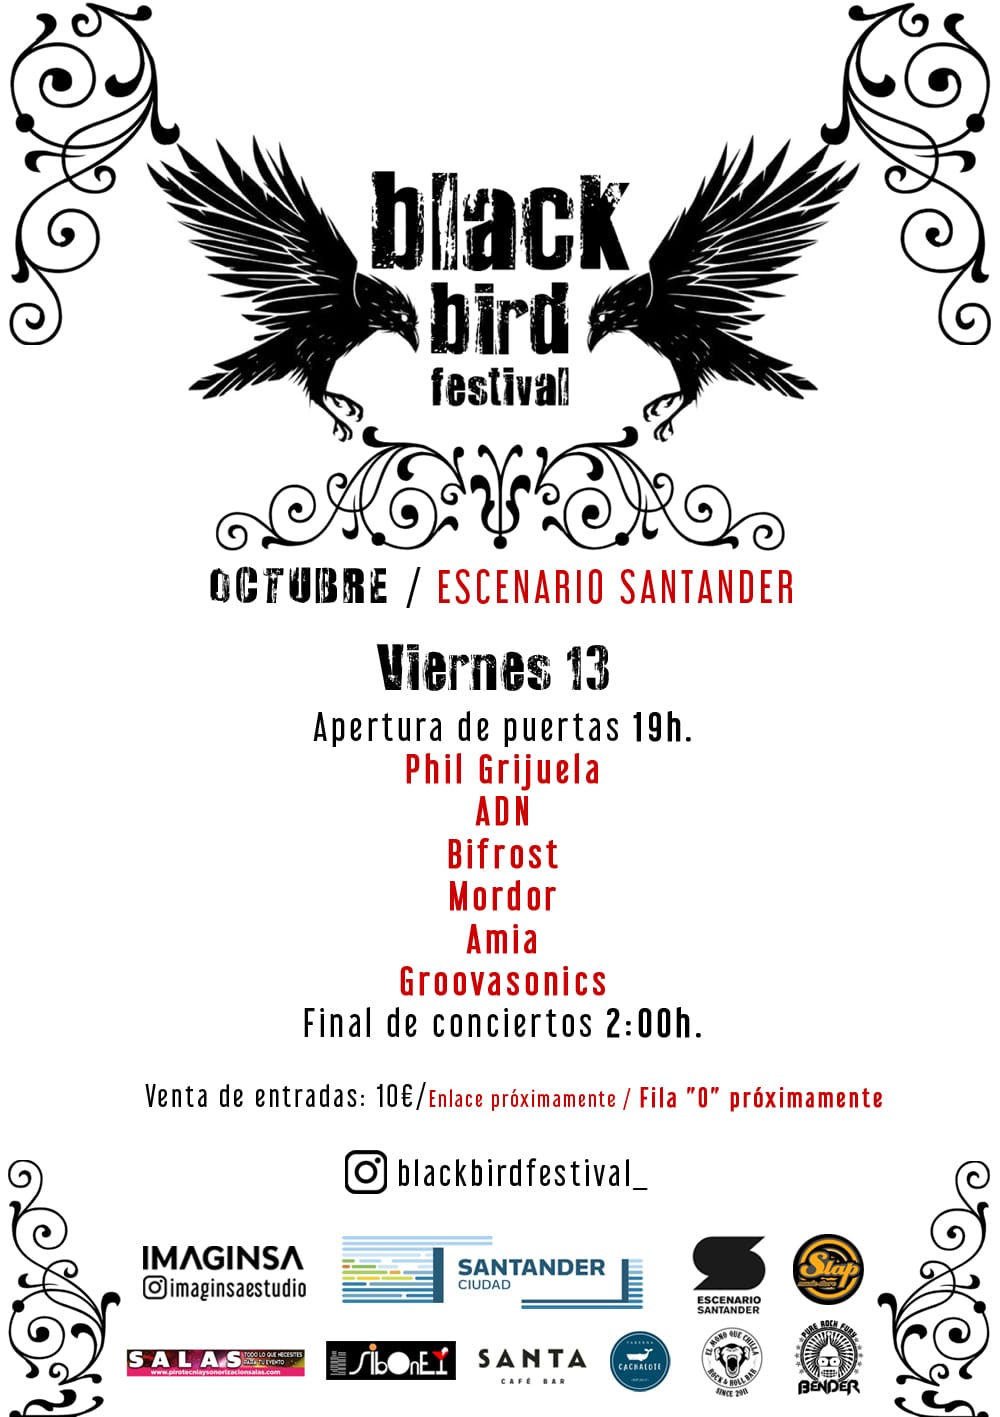 BLACK BIRD FESTIVAL en Escenario Santander - Cantabria - VIE 13 - Mutick